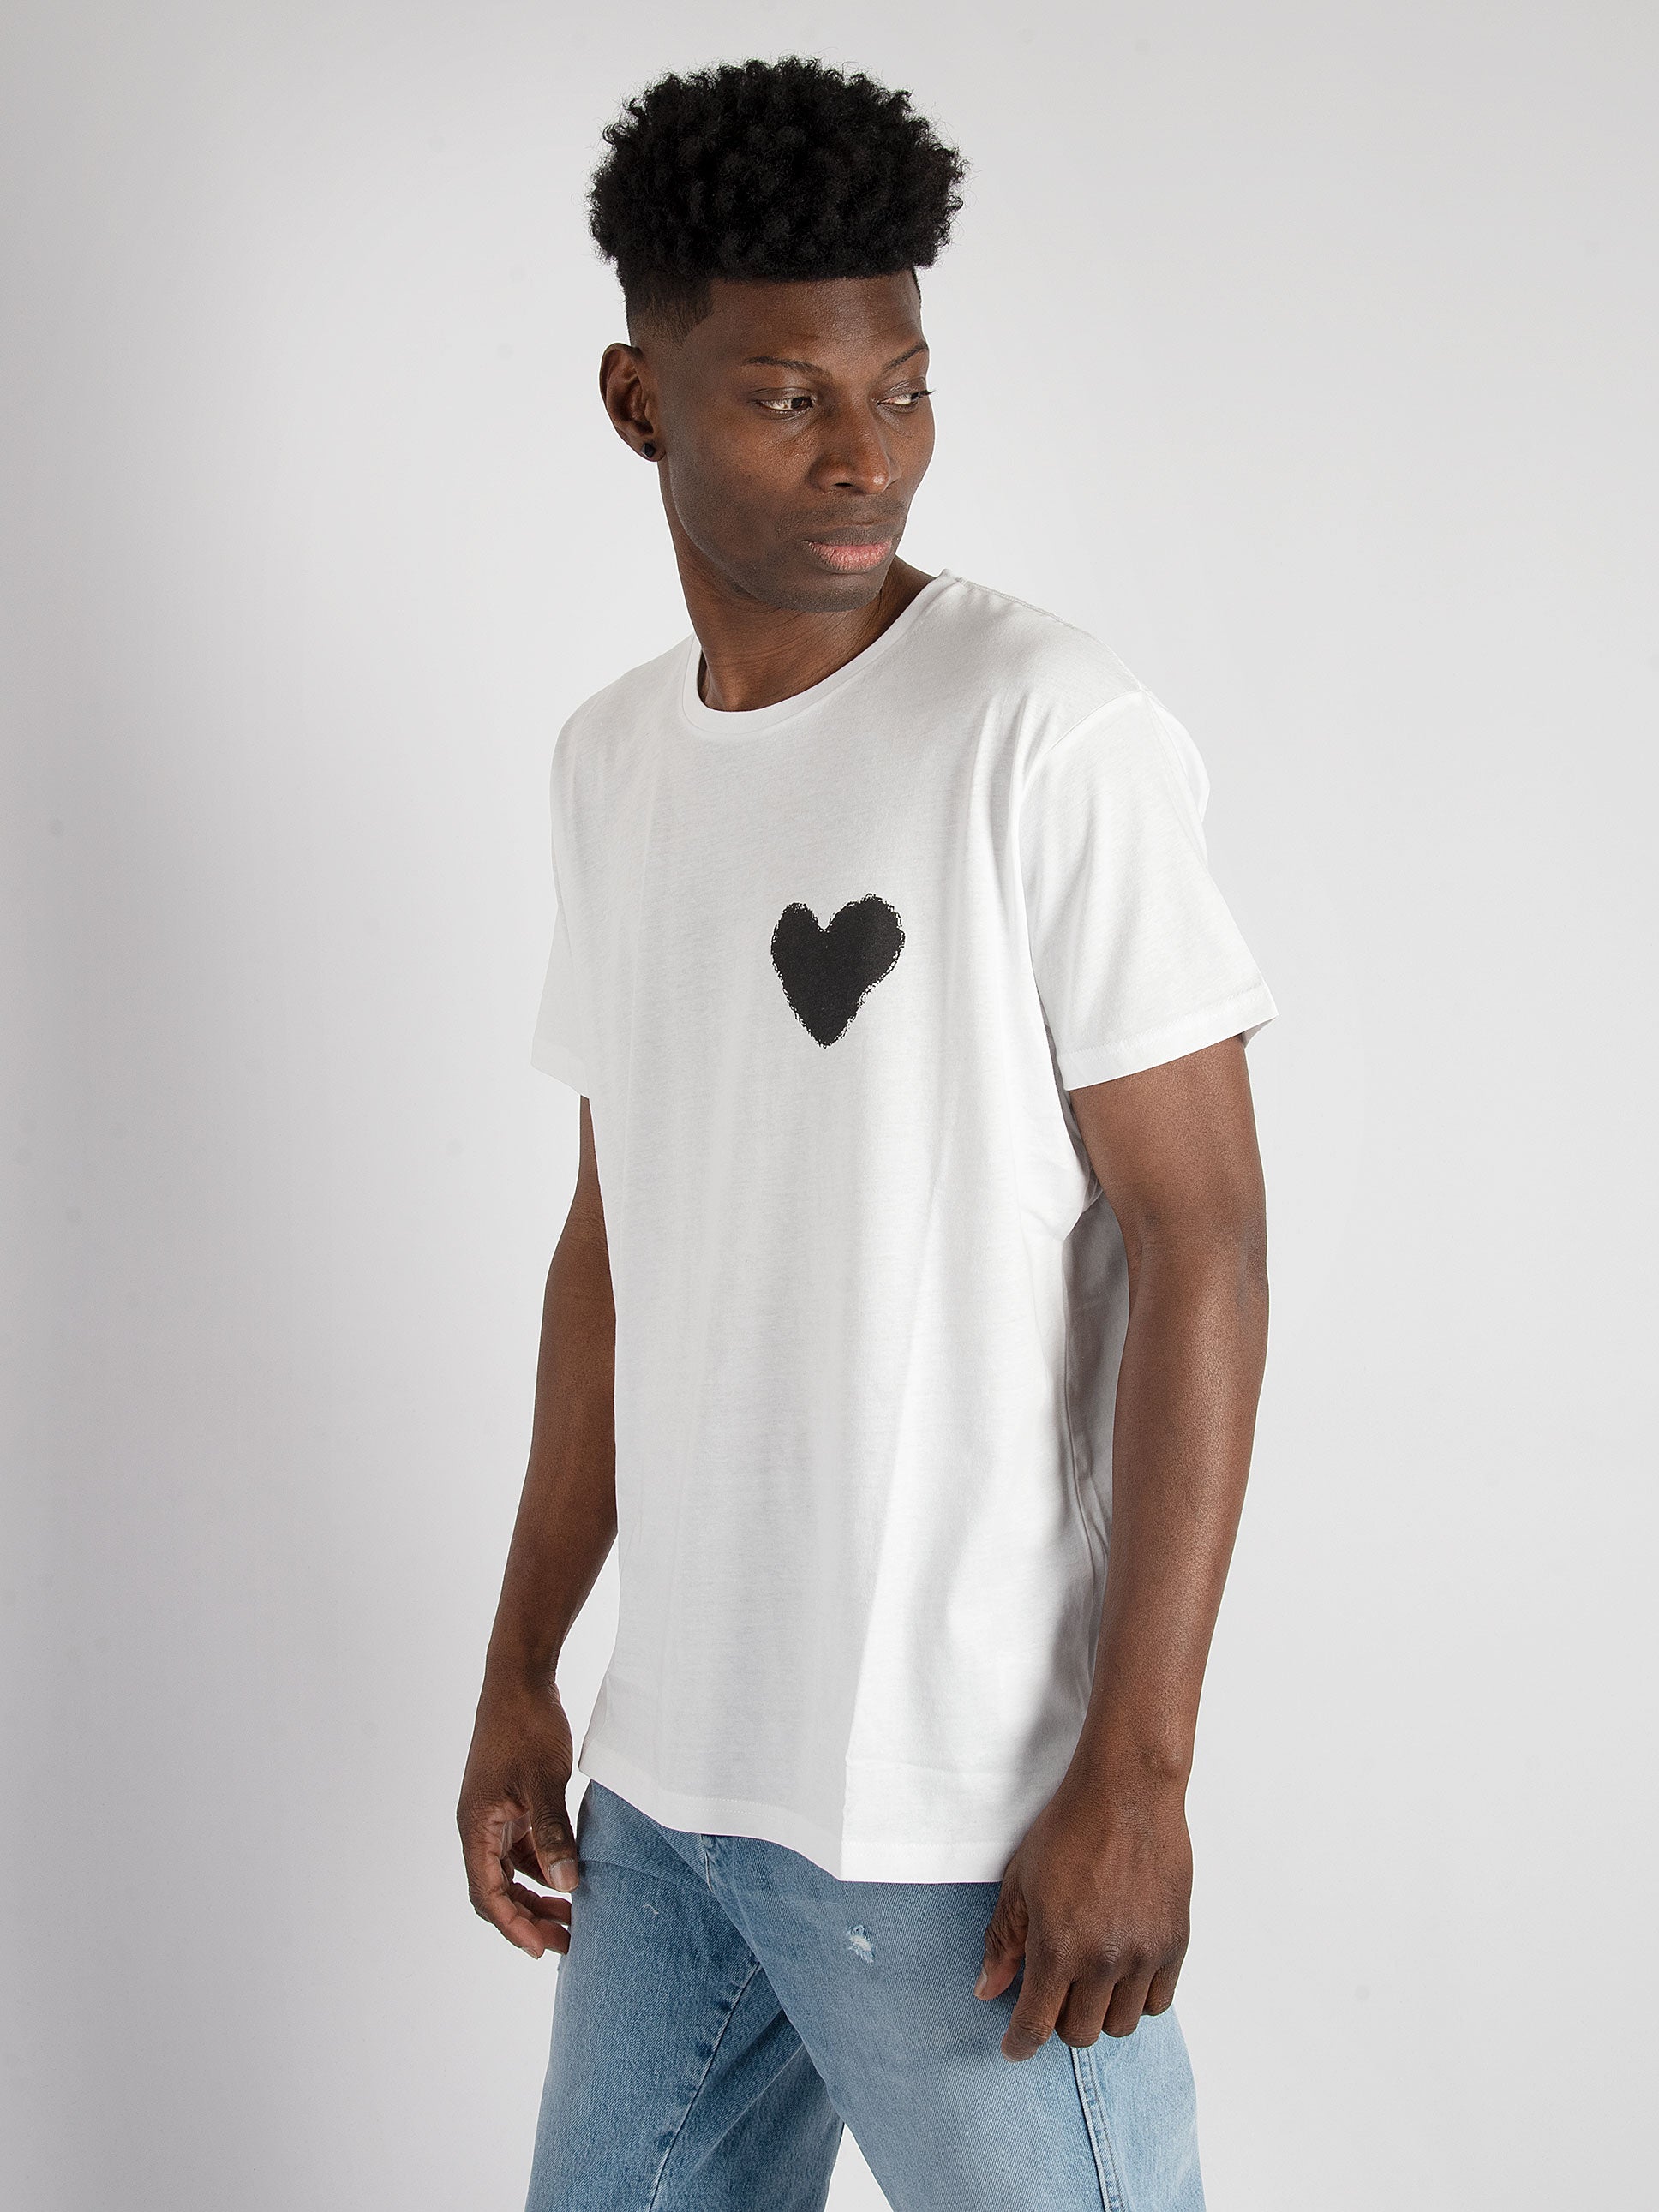 T-Shirt Inspire Heart - Bianco/Nero